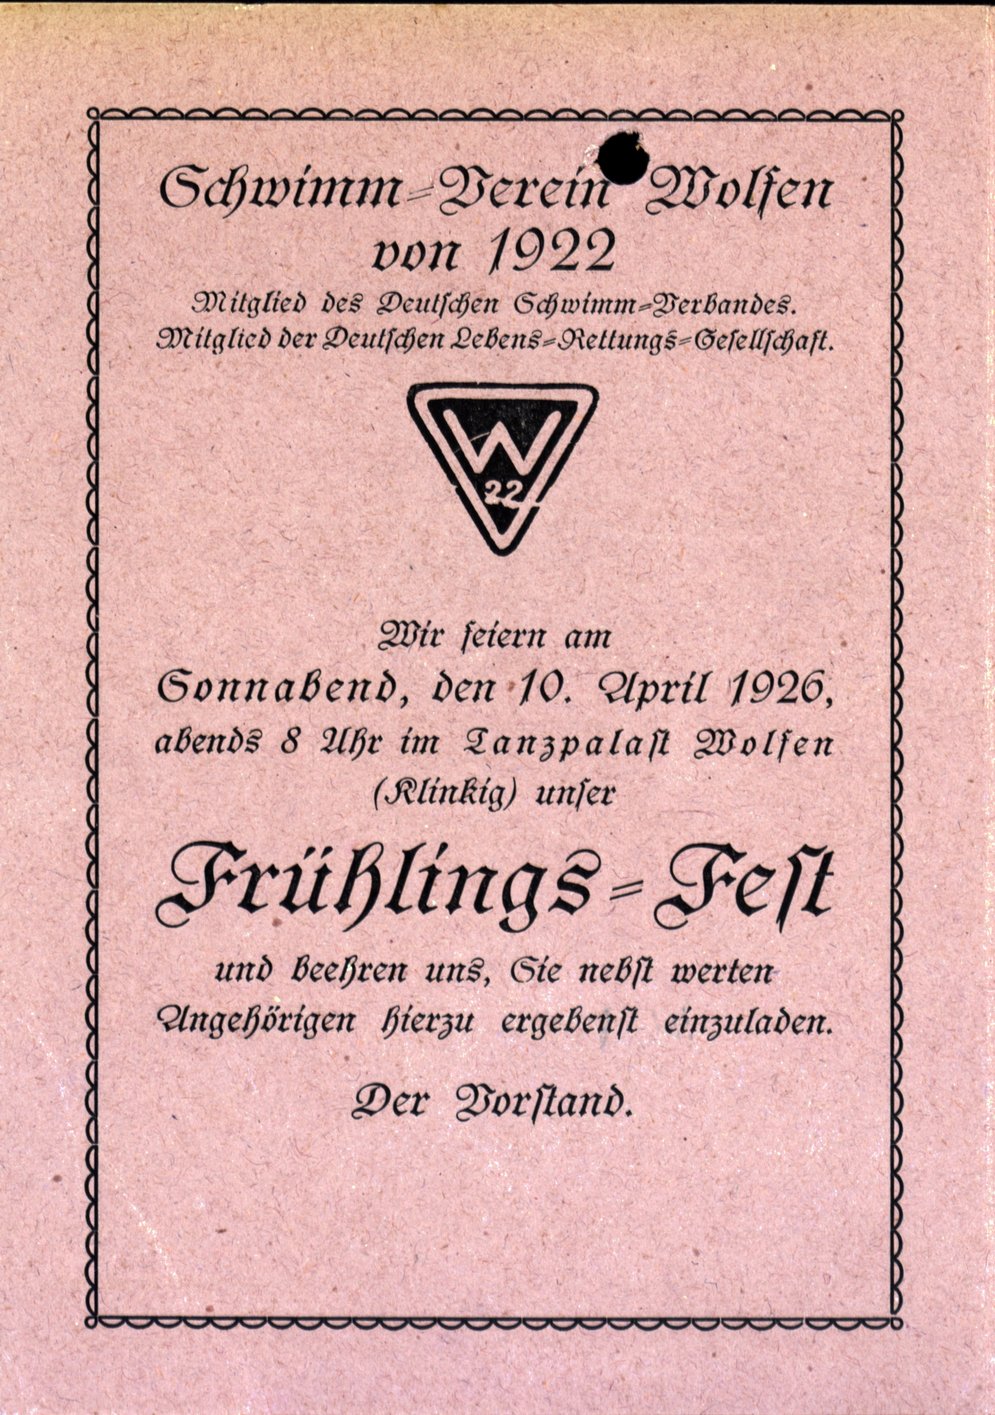 Einladung zum Frühlingsfest des Schwimmvereins Wolfen.